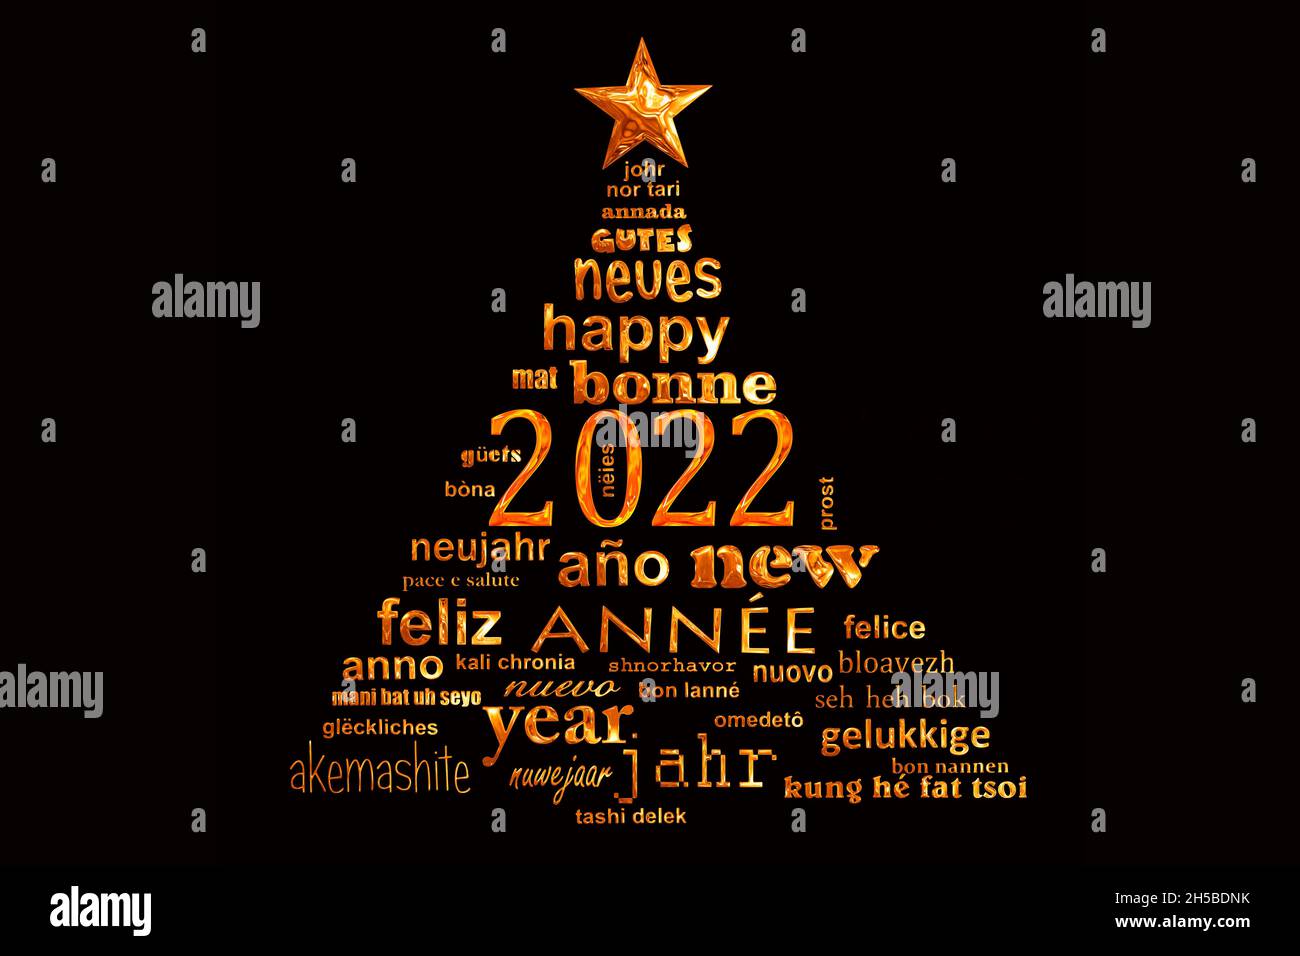 2022 nuevo año multilingüe texto palabra nube tarjeta de felicitación en la forma de un árbol de navidad Foto de stock